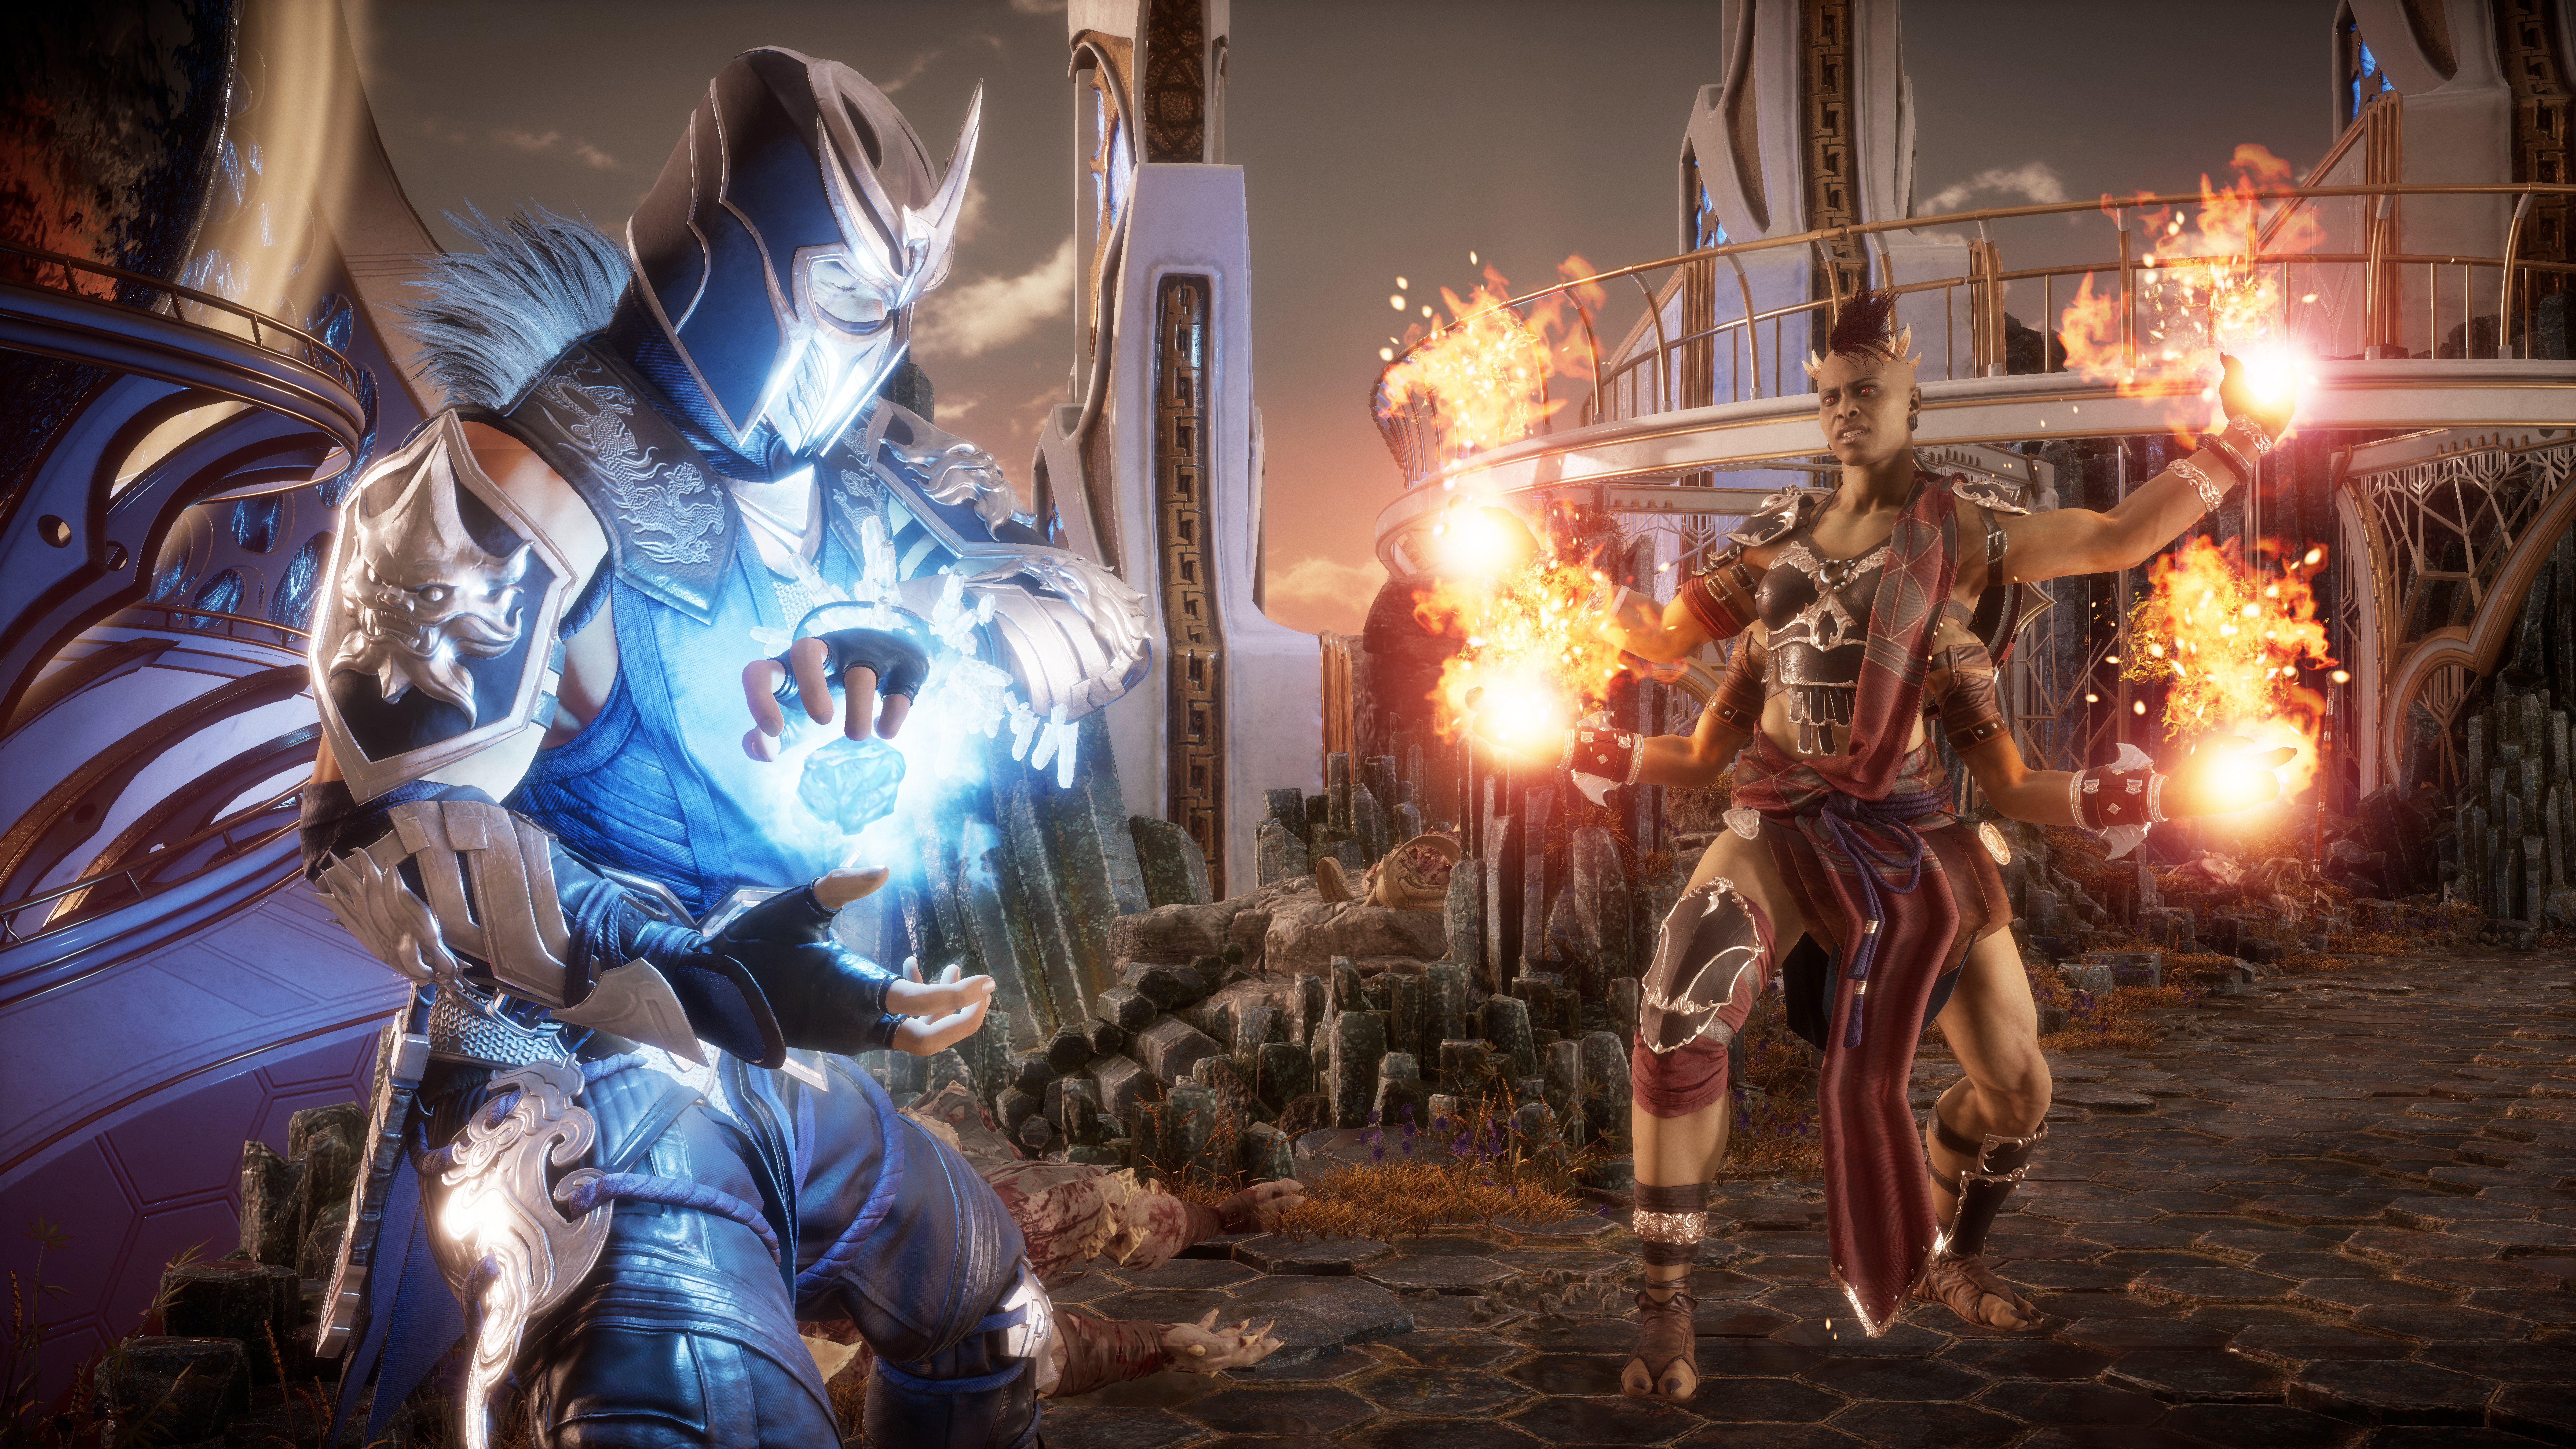 Warner Bros. Games Announces Mortal Kombat: Onslaught